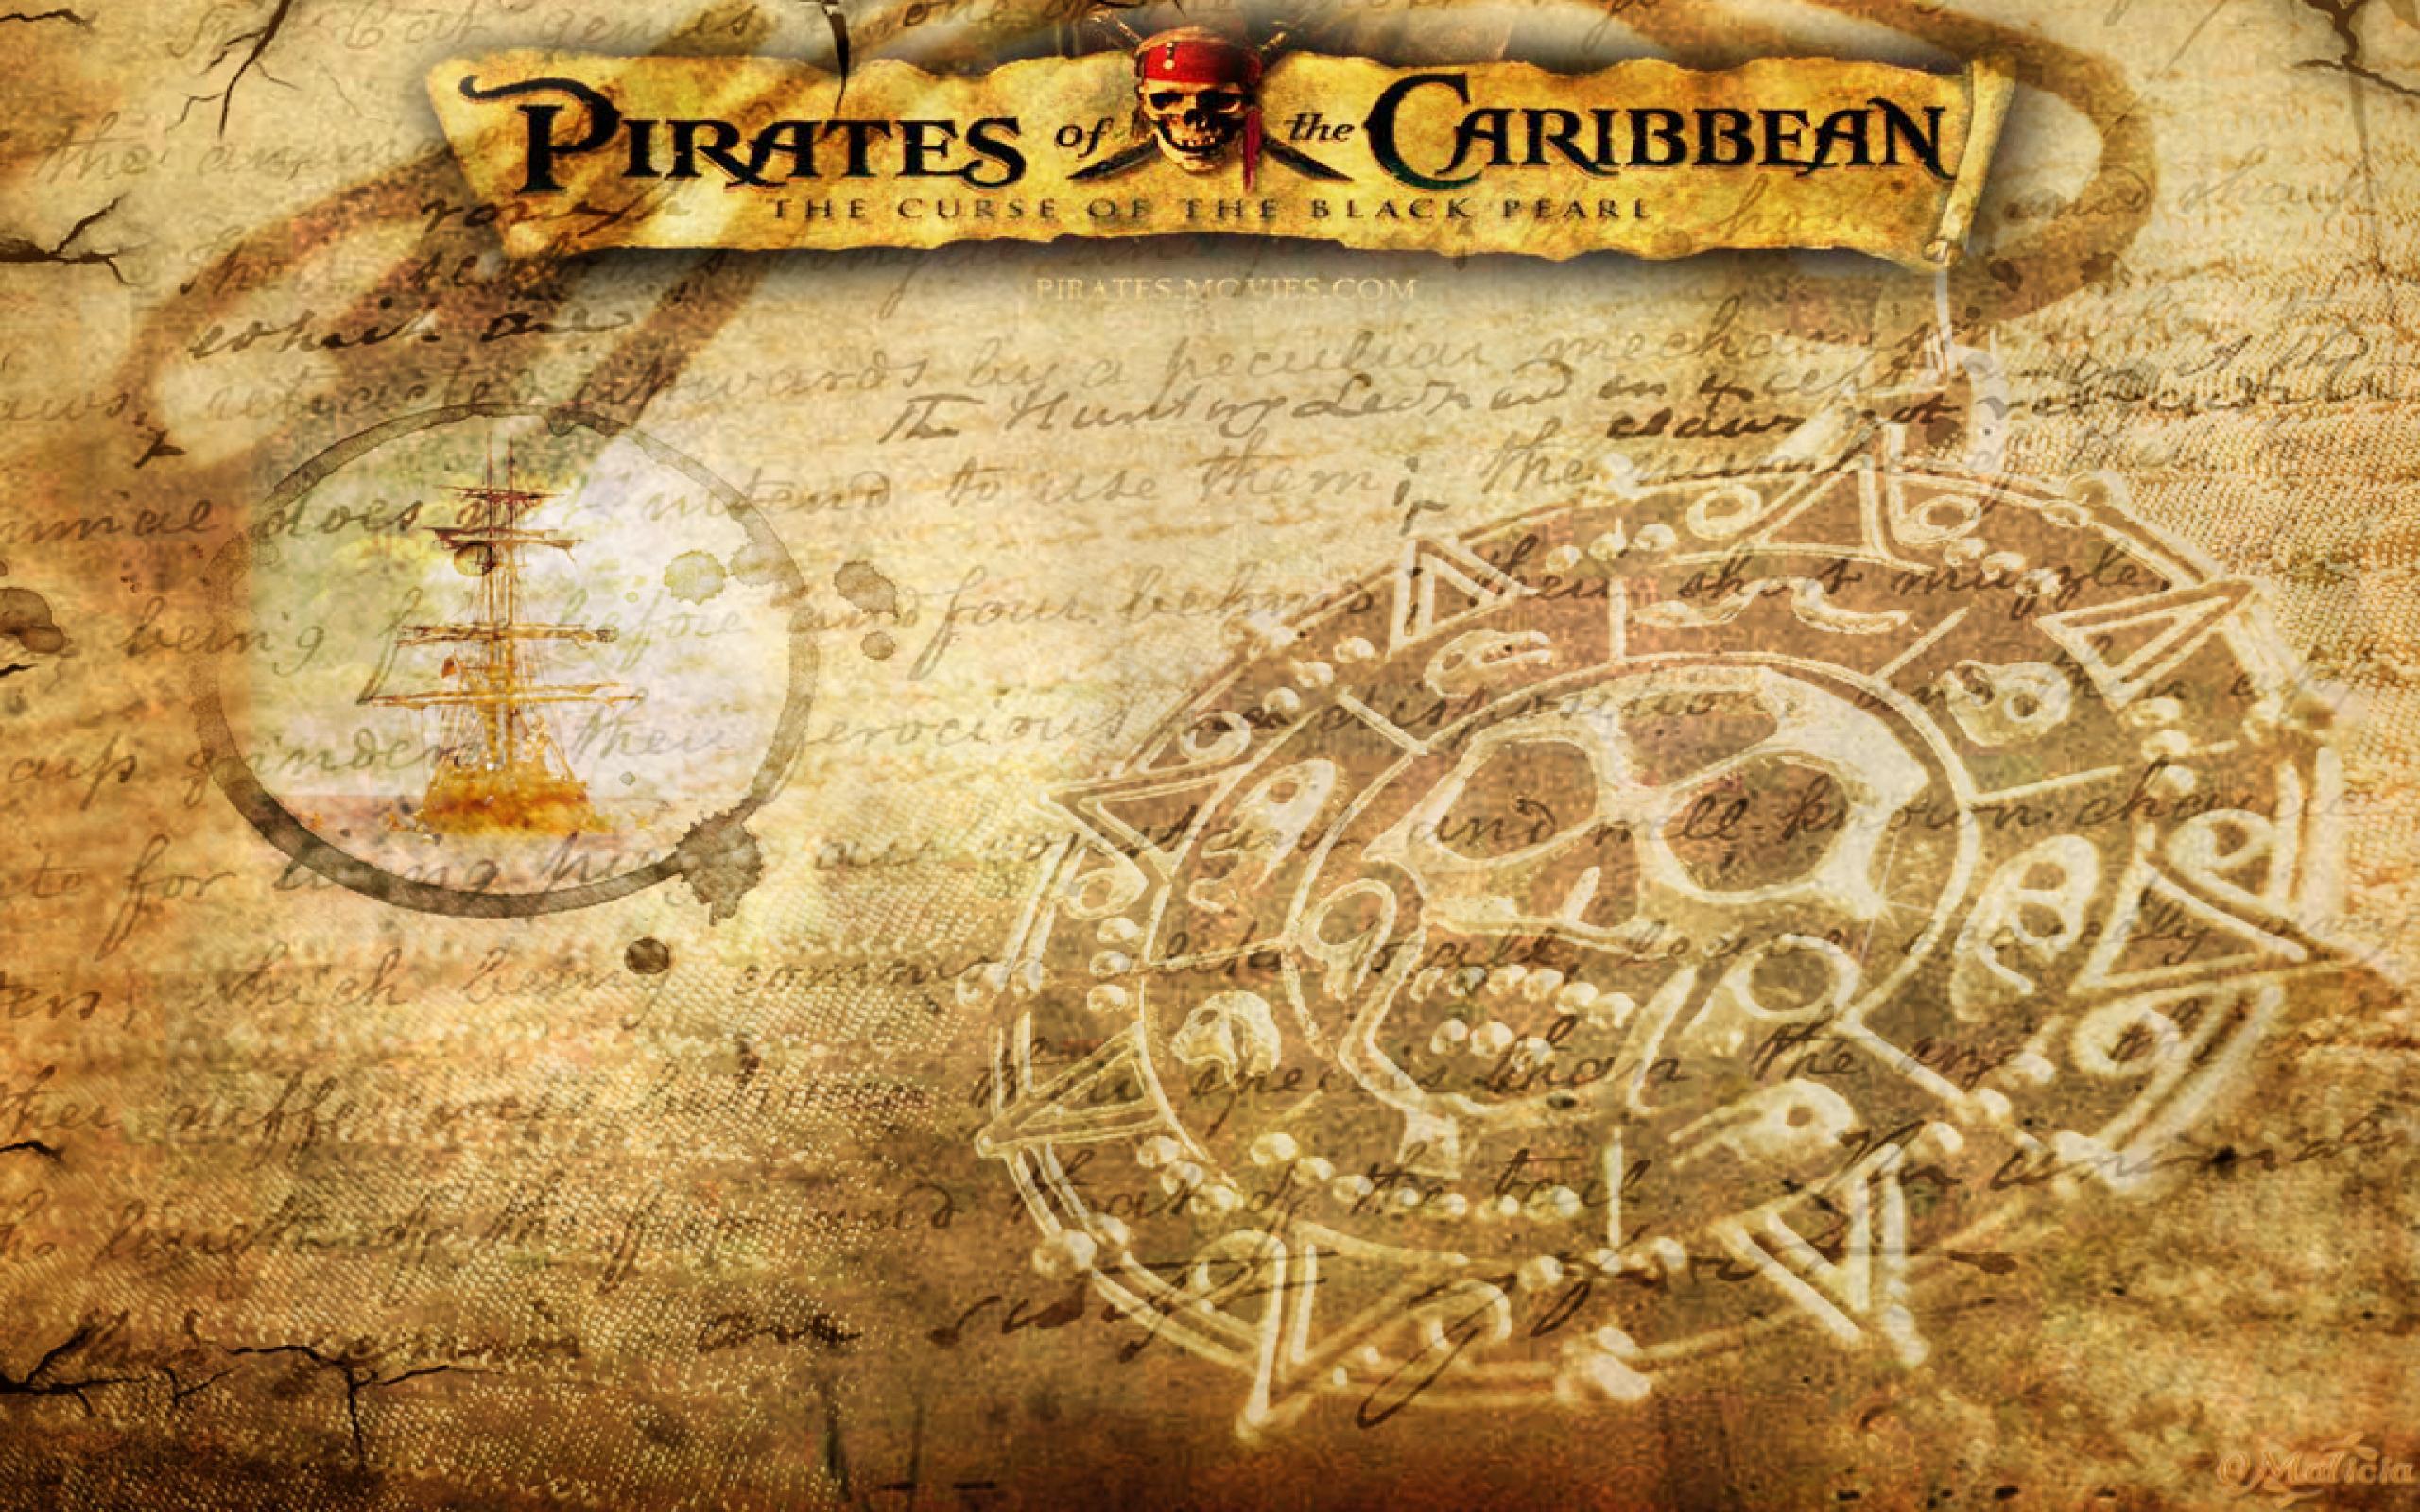 加勒比海盗黑胡子-爱德华·蒂奇_CG插画_绘画艺术-摩尔网CGMOL